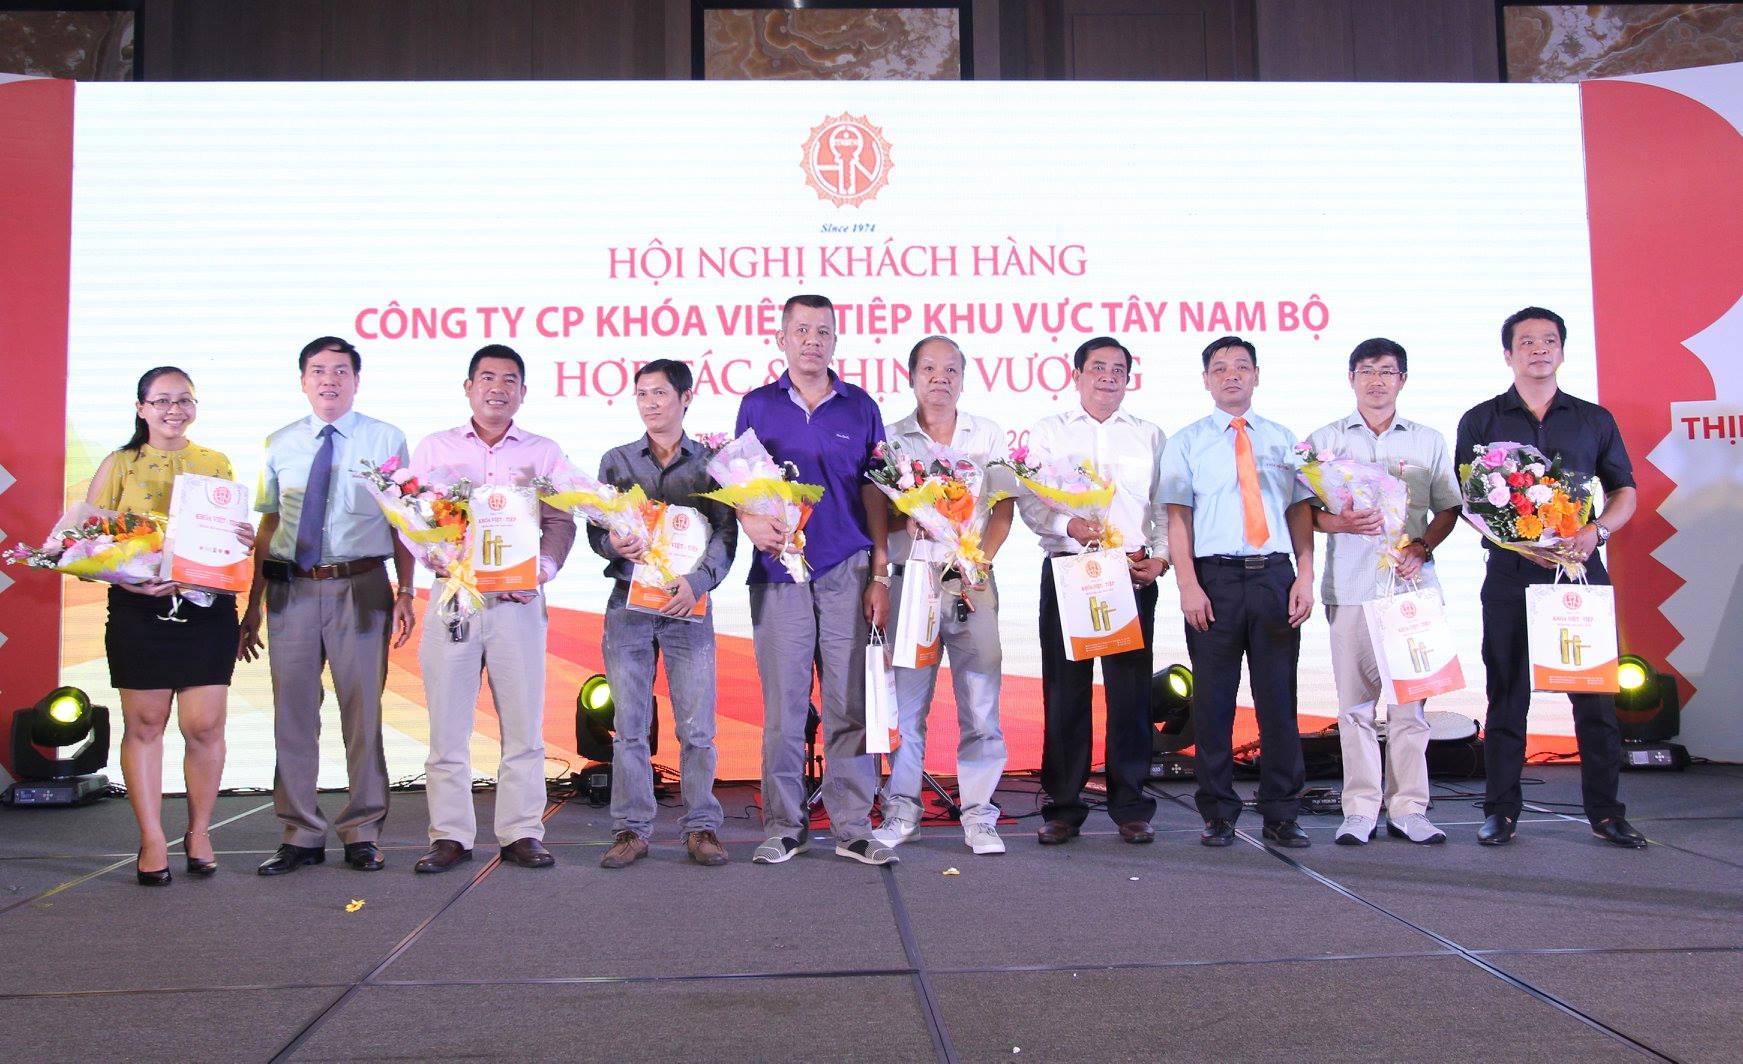 Hội nghị khách hàng Khoá Việt-Tiệp thành công tốt đẹp tại TP. Cần Thơ 